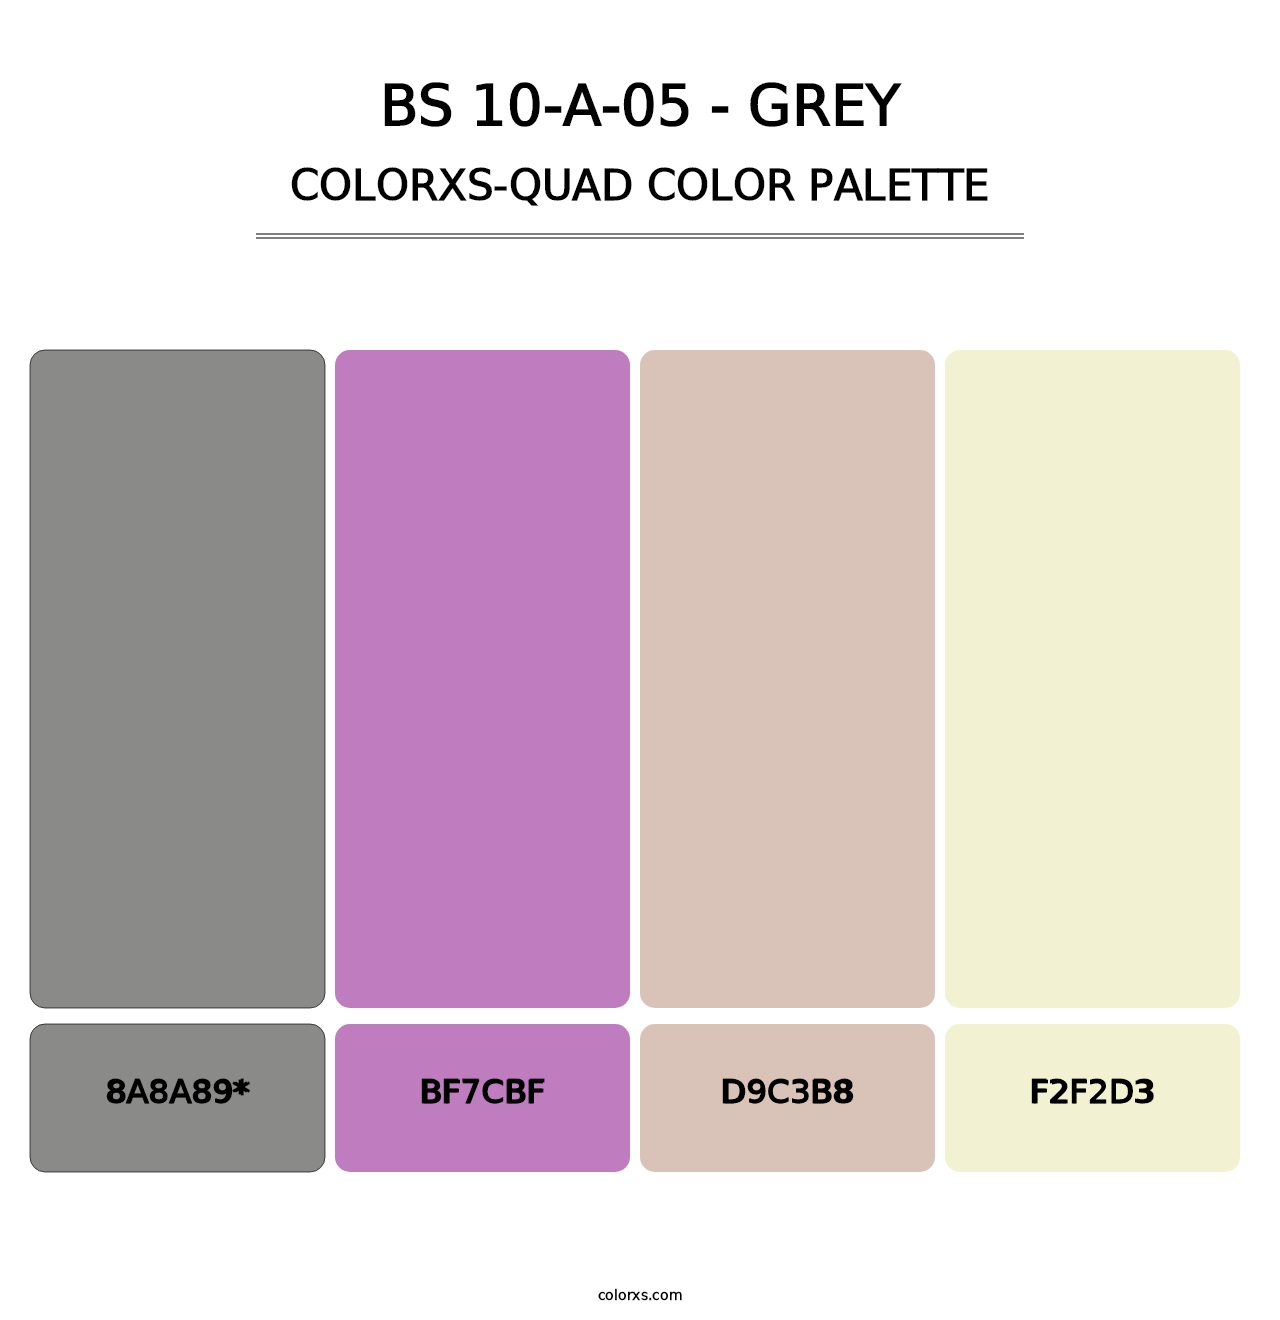 BS 10-A-05 - Grey - Colorxs Quad Palette